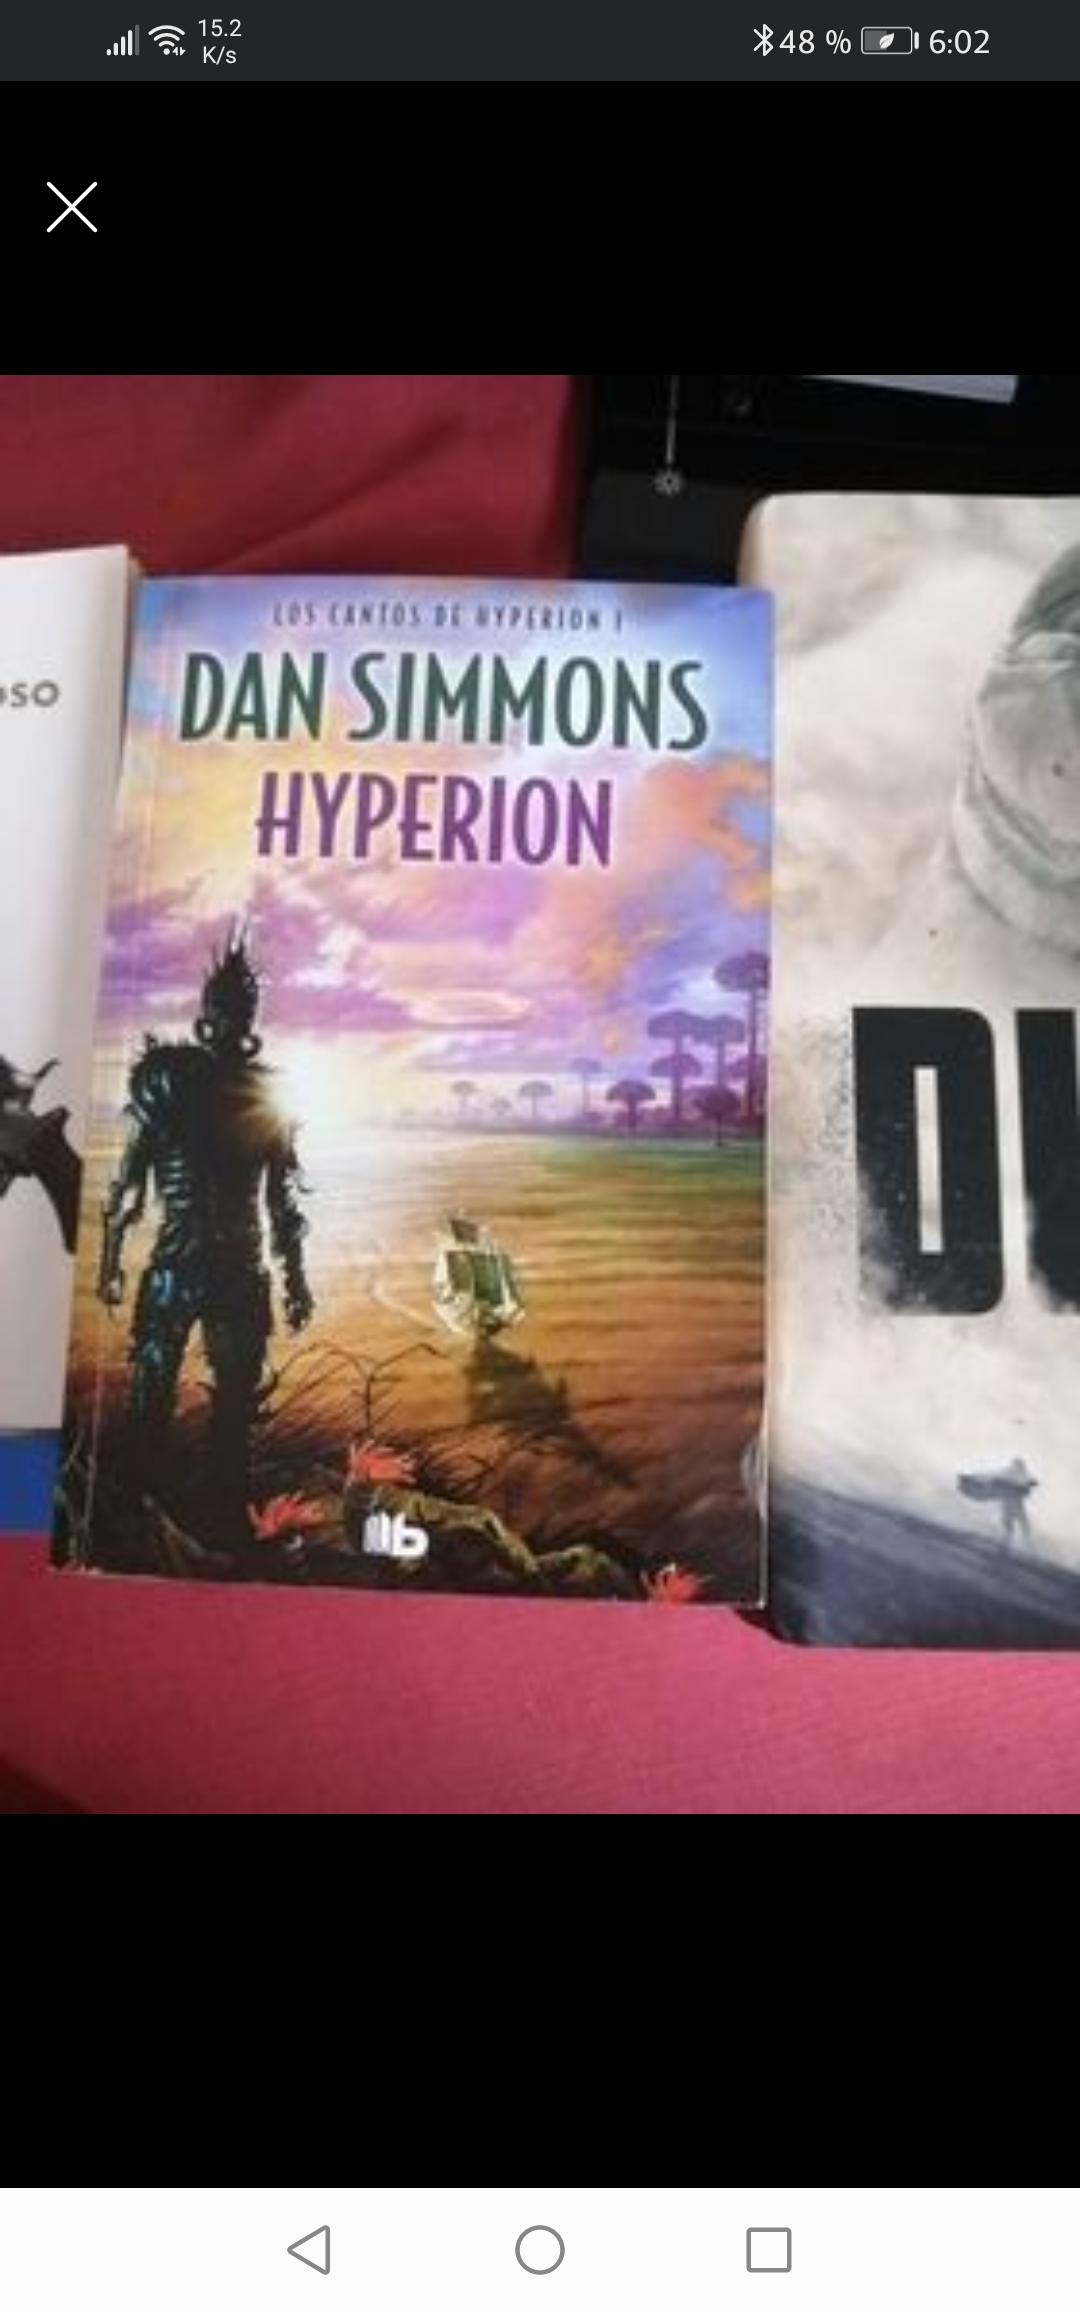 libros y revistas - Cantos de Hyperion